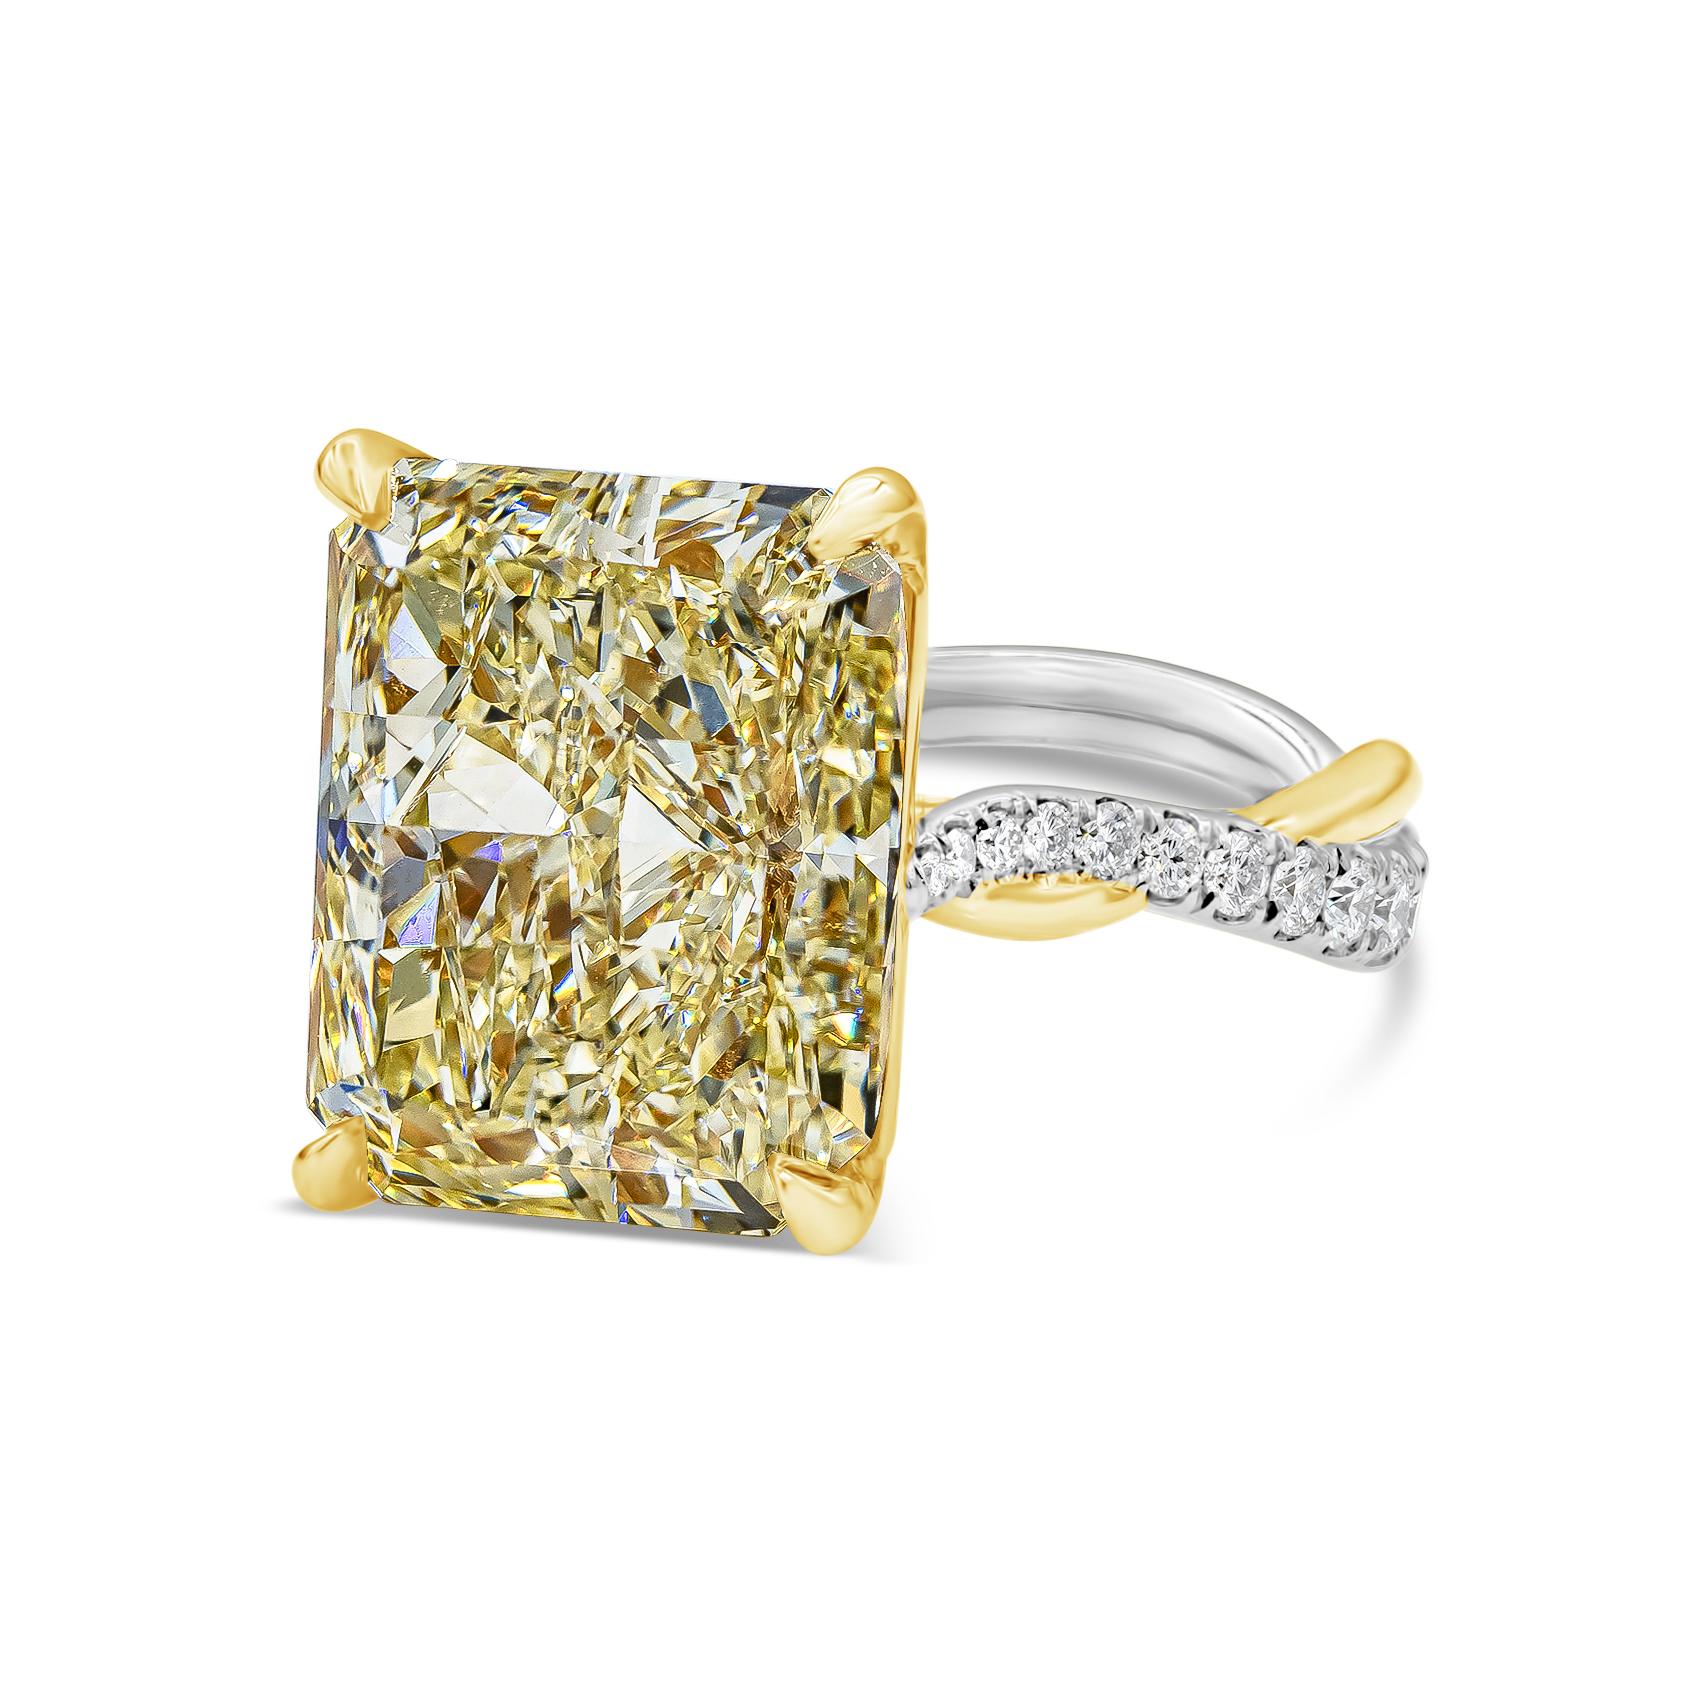 Ein stilvoller und gut gearbeiteter High-End-Verlobungsring mit einem farbenprächtigen gelben Diamanten von 12,16 Karat im Strahlenschliff, der von GIA als Fancy Light Yellow und VS1 Reinheit zertifiziert wurde und in einem vierzackigen Korb aus 18